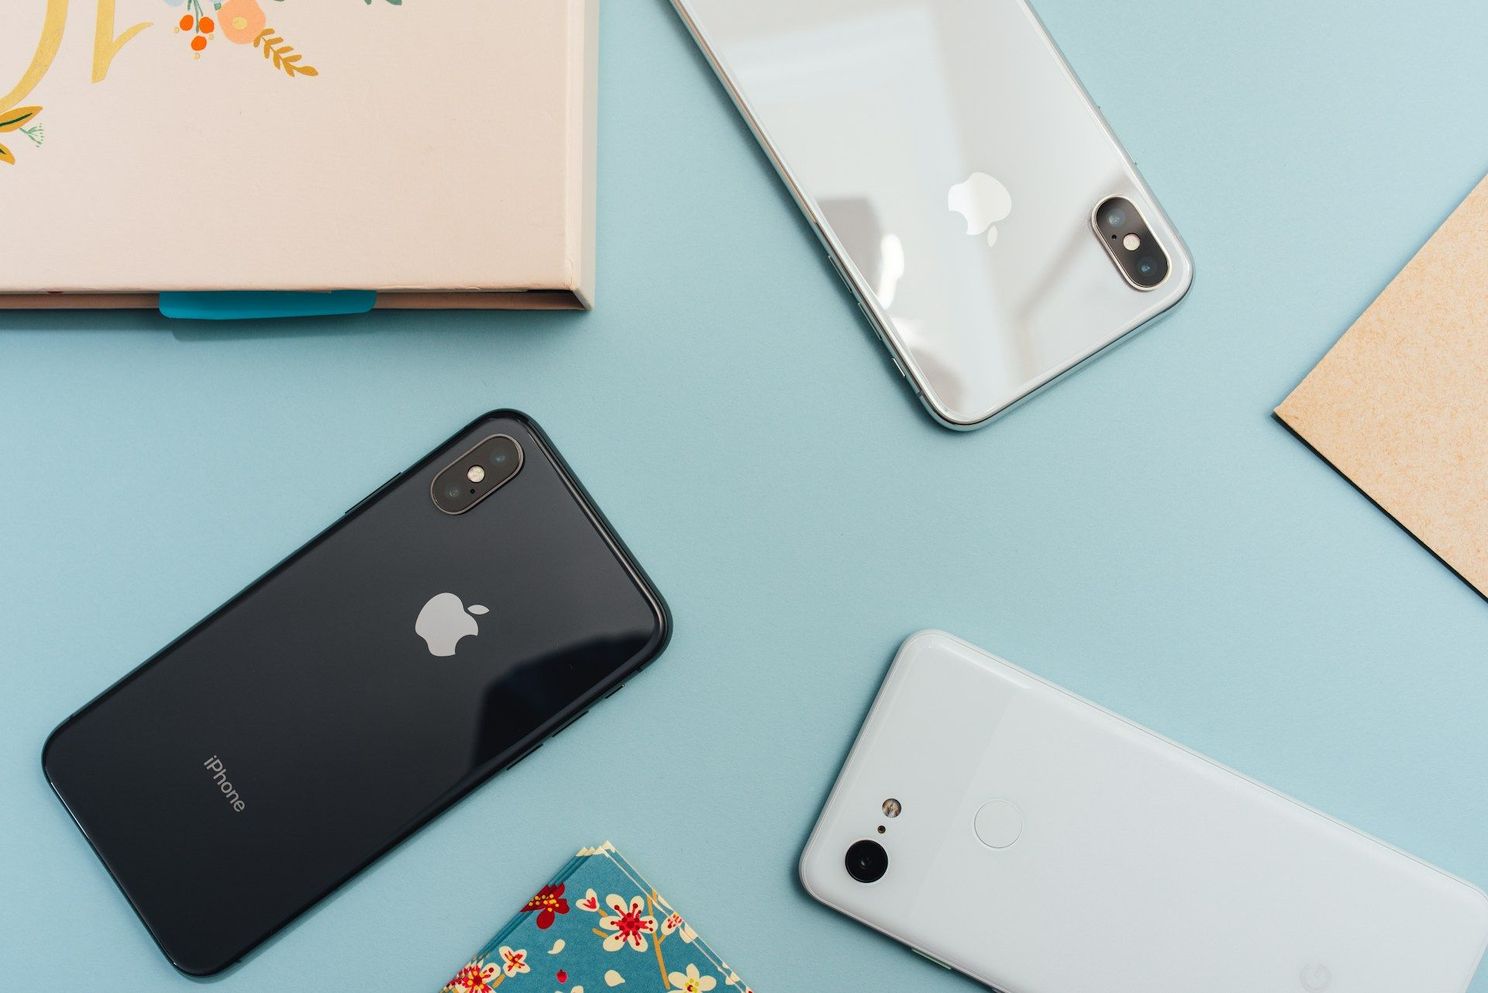 Apple onthult veelvoorkomende fout waardoor je iPhone trager wordt en je batterijduur vermindert